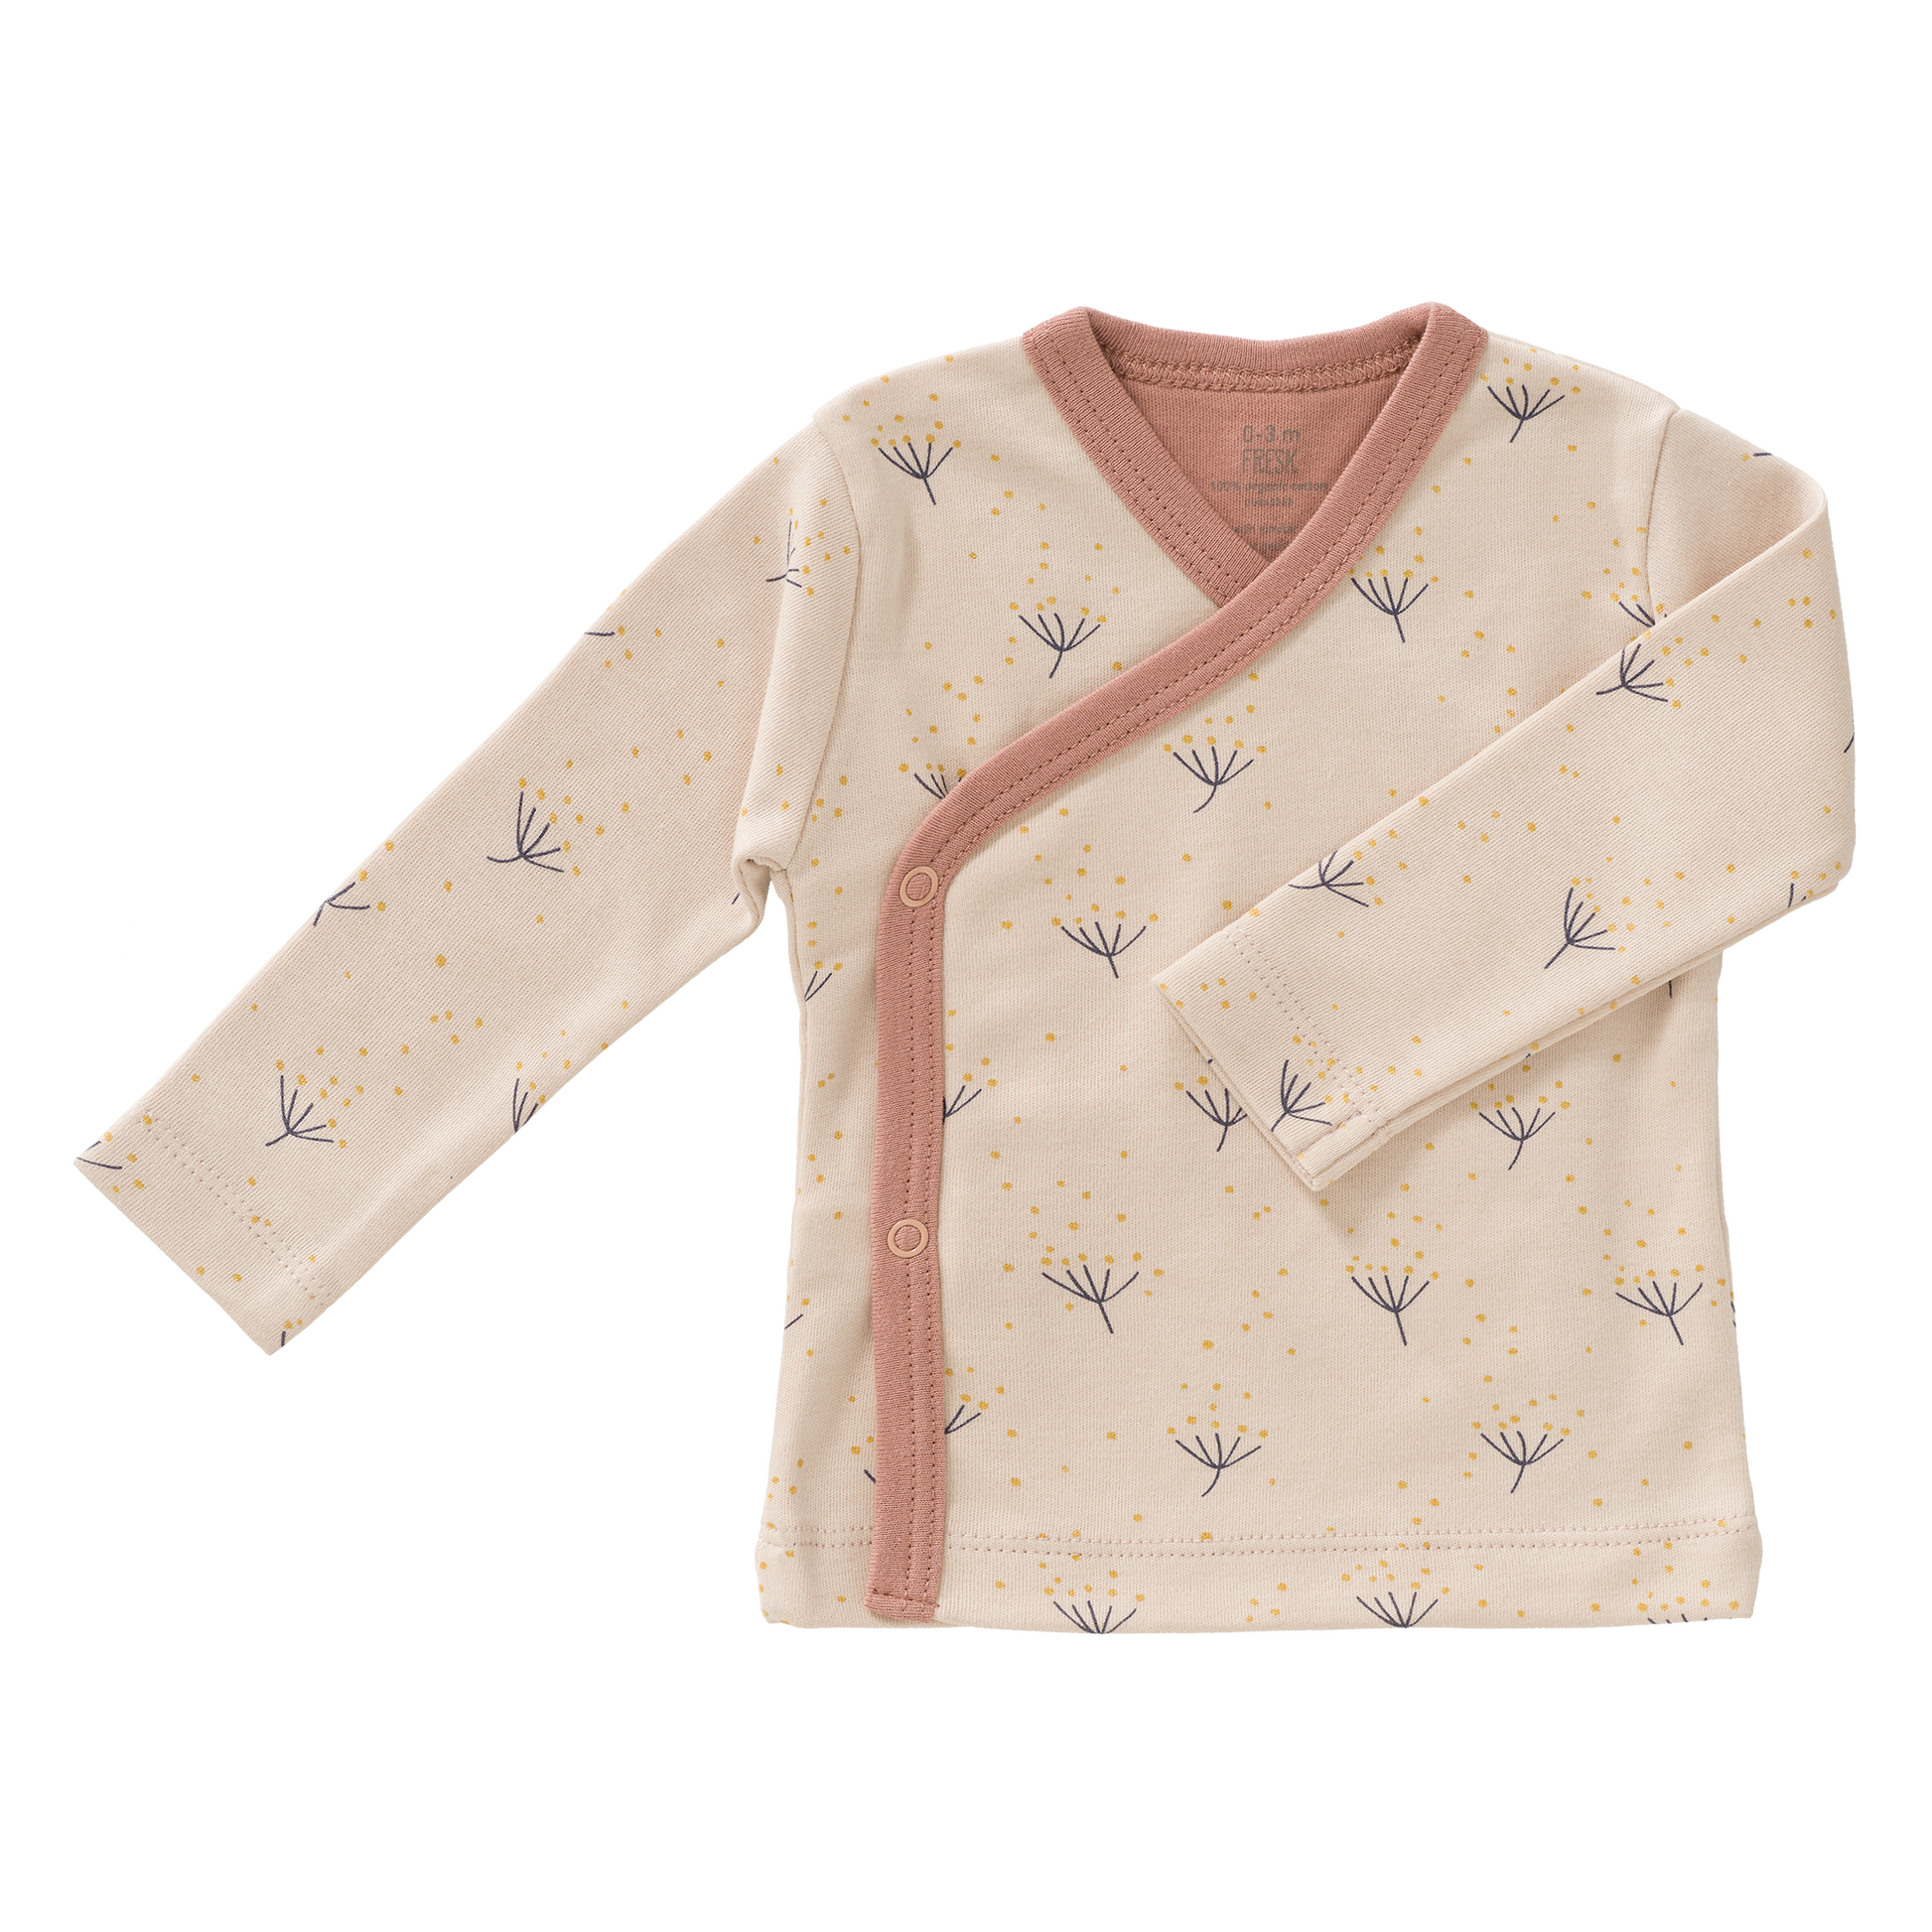 Süßes Wickelshirt aus Biobaumwolle in rosa mit Pusteblumen darauf